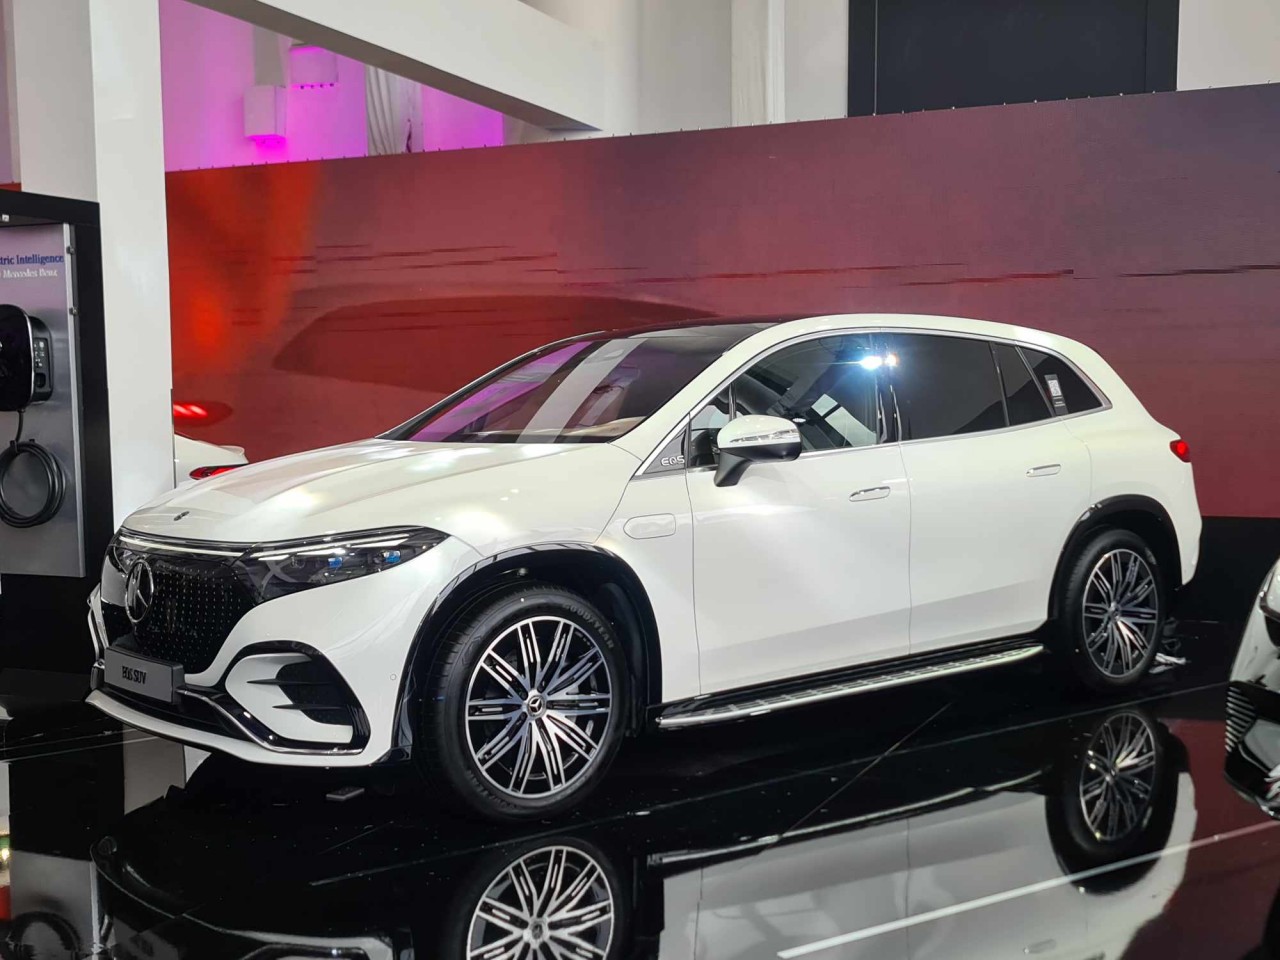 Mercedes-Benz mang 40 xe đến 'khoe hàng' tại triển lãm xe và nghệ thuật